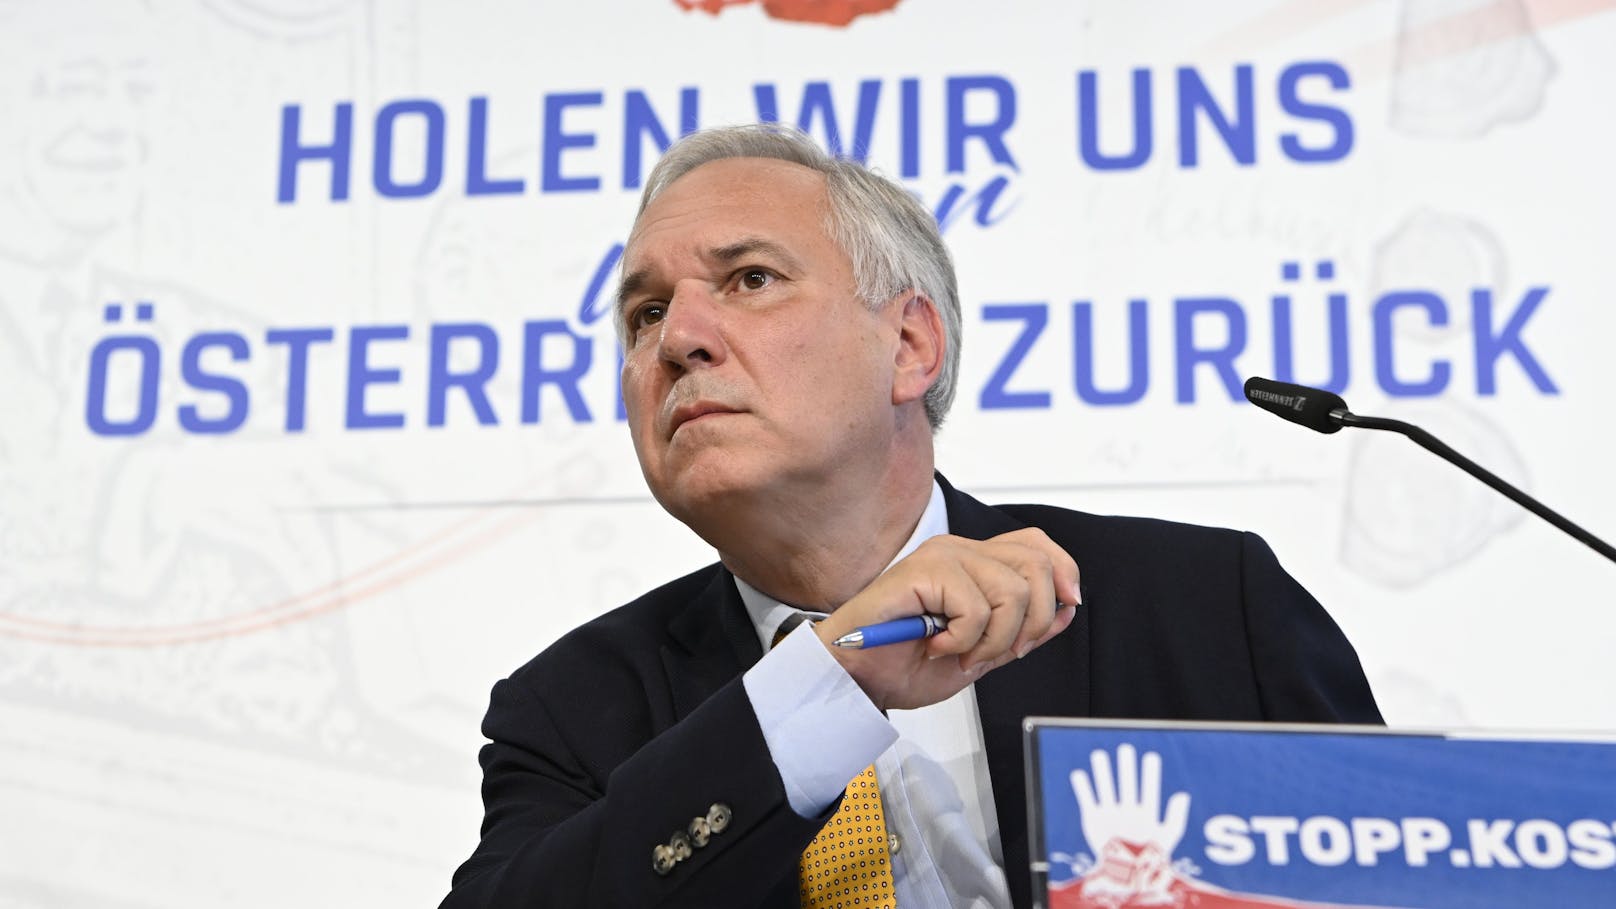 FPÖ-Kandidat Walter Rosenkranz zeigte sich bei einer Pressekonferenz am Samstag siegessicher.